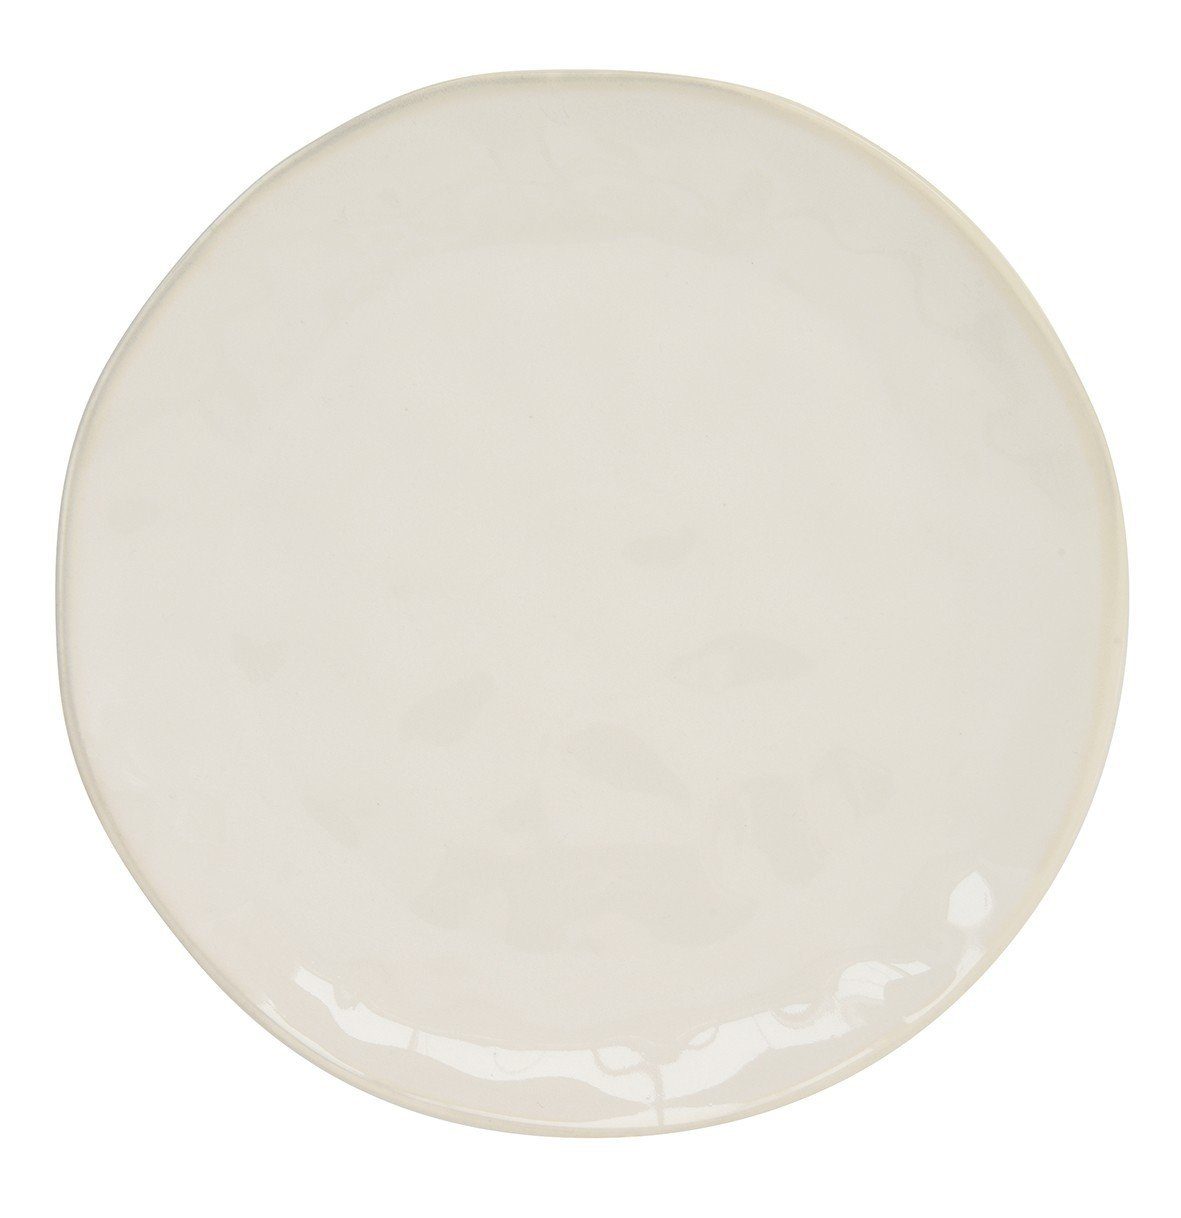 Porzellan, Porzellan easylife Geschirr-Set Weiß Interiors, D:21cm